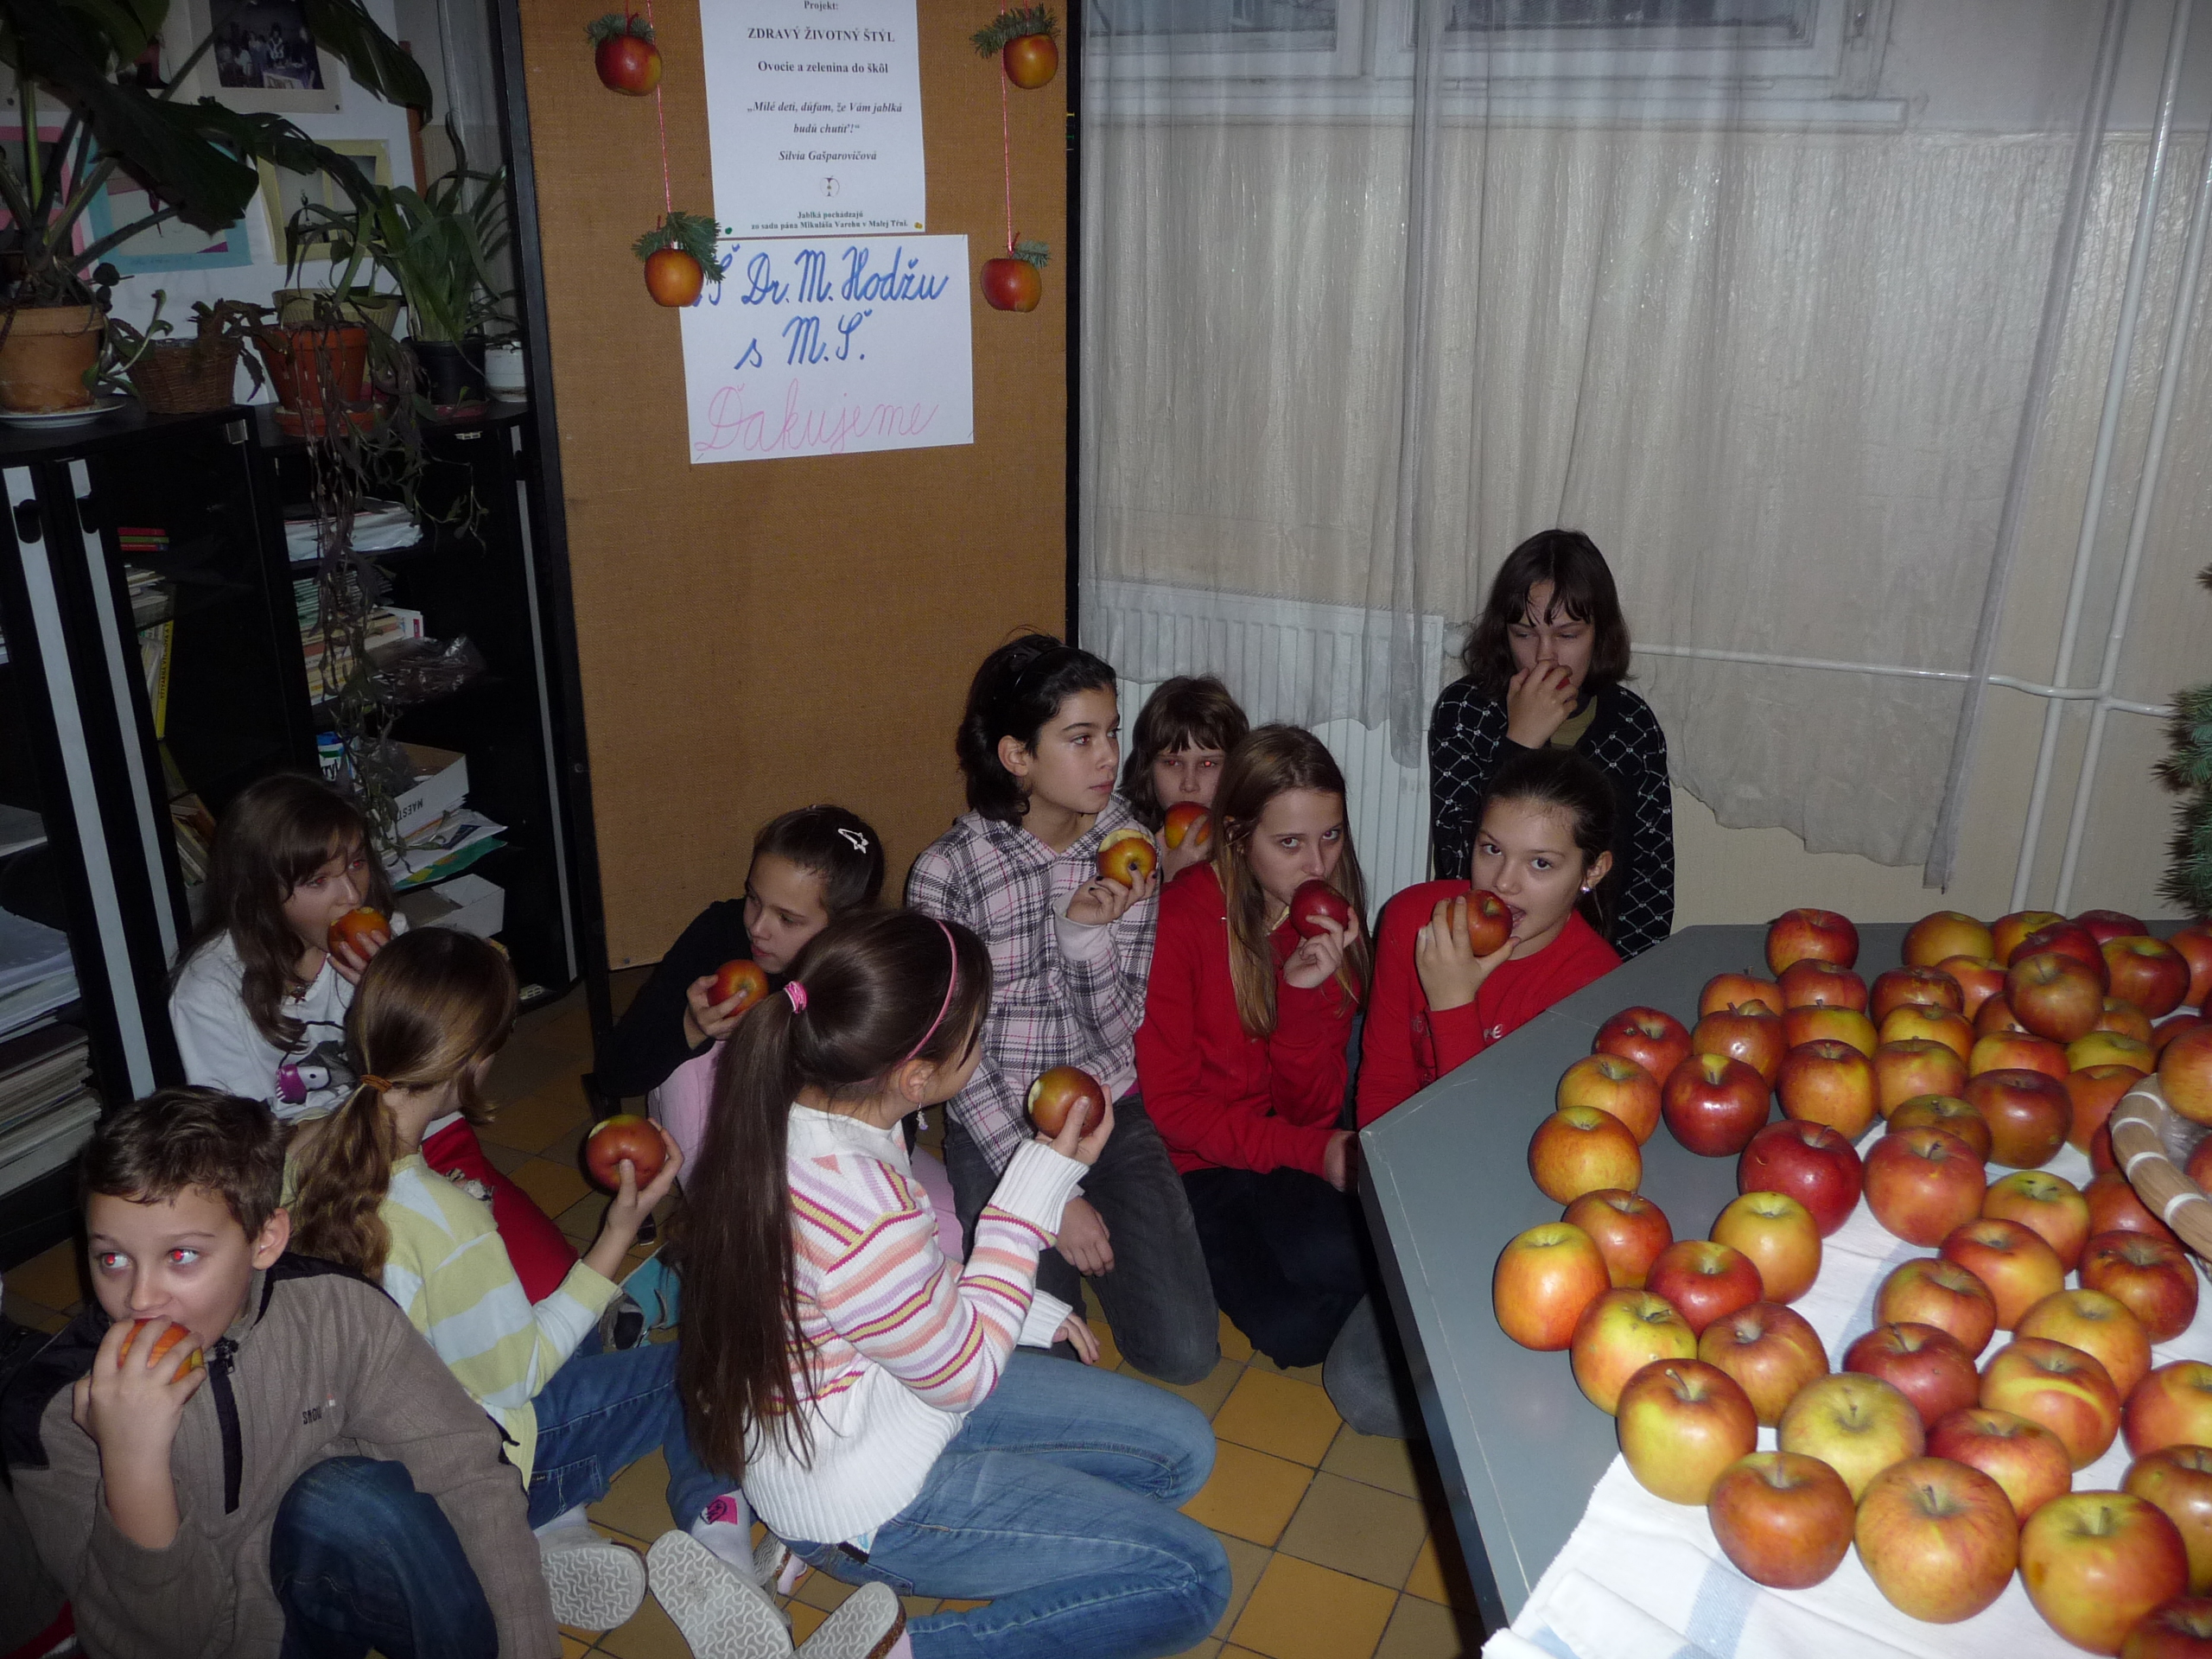 Zdravý životný štýl - Ovocie a zelenina do škôl